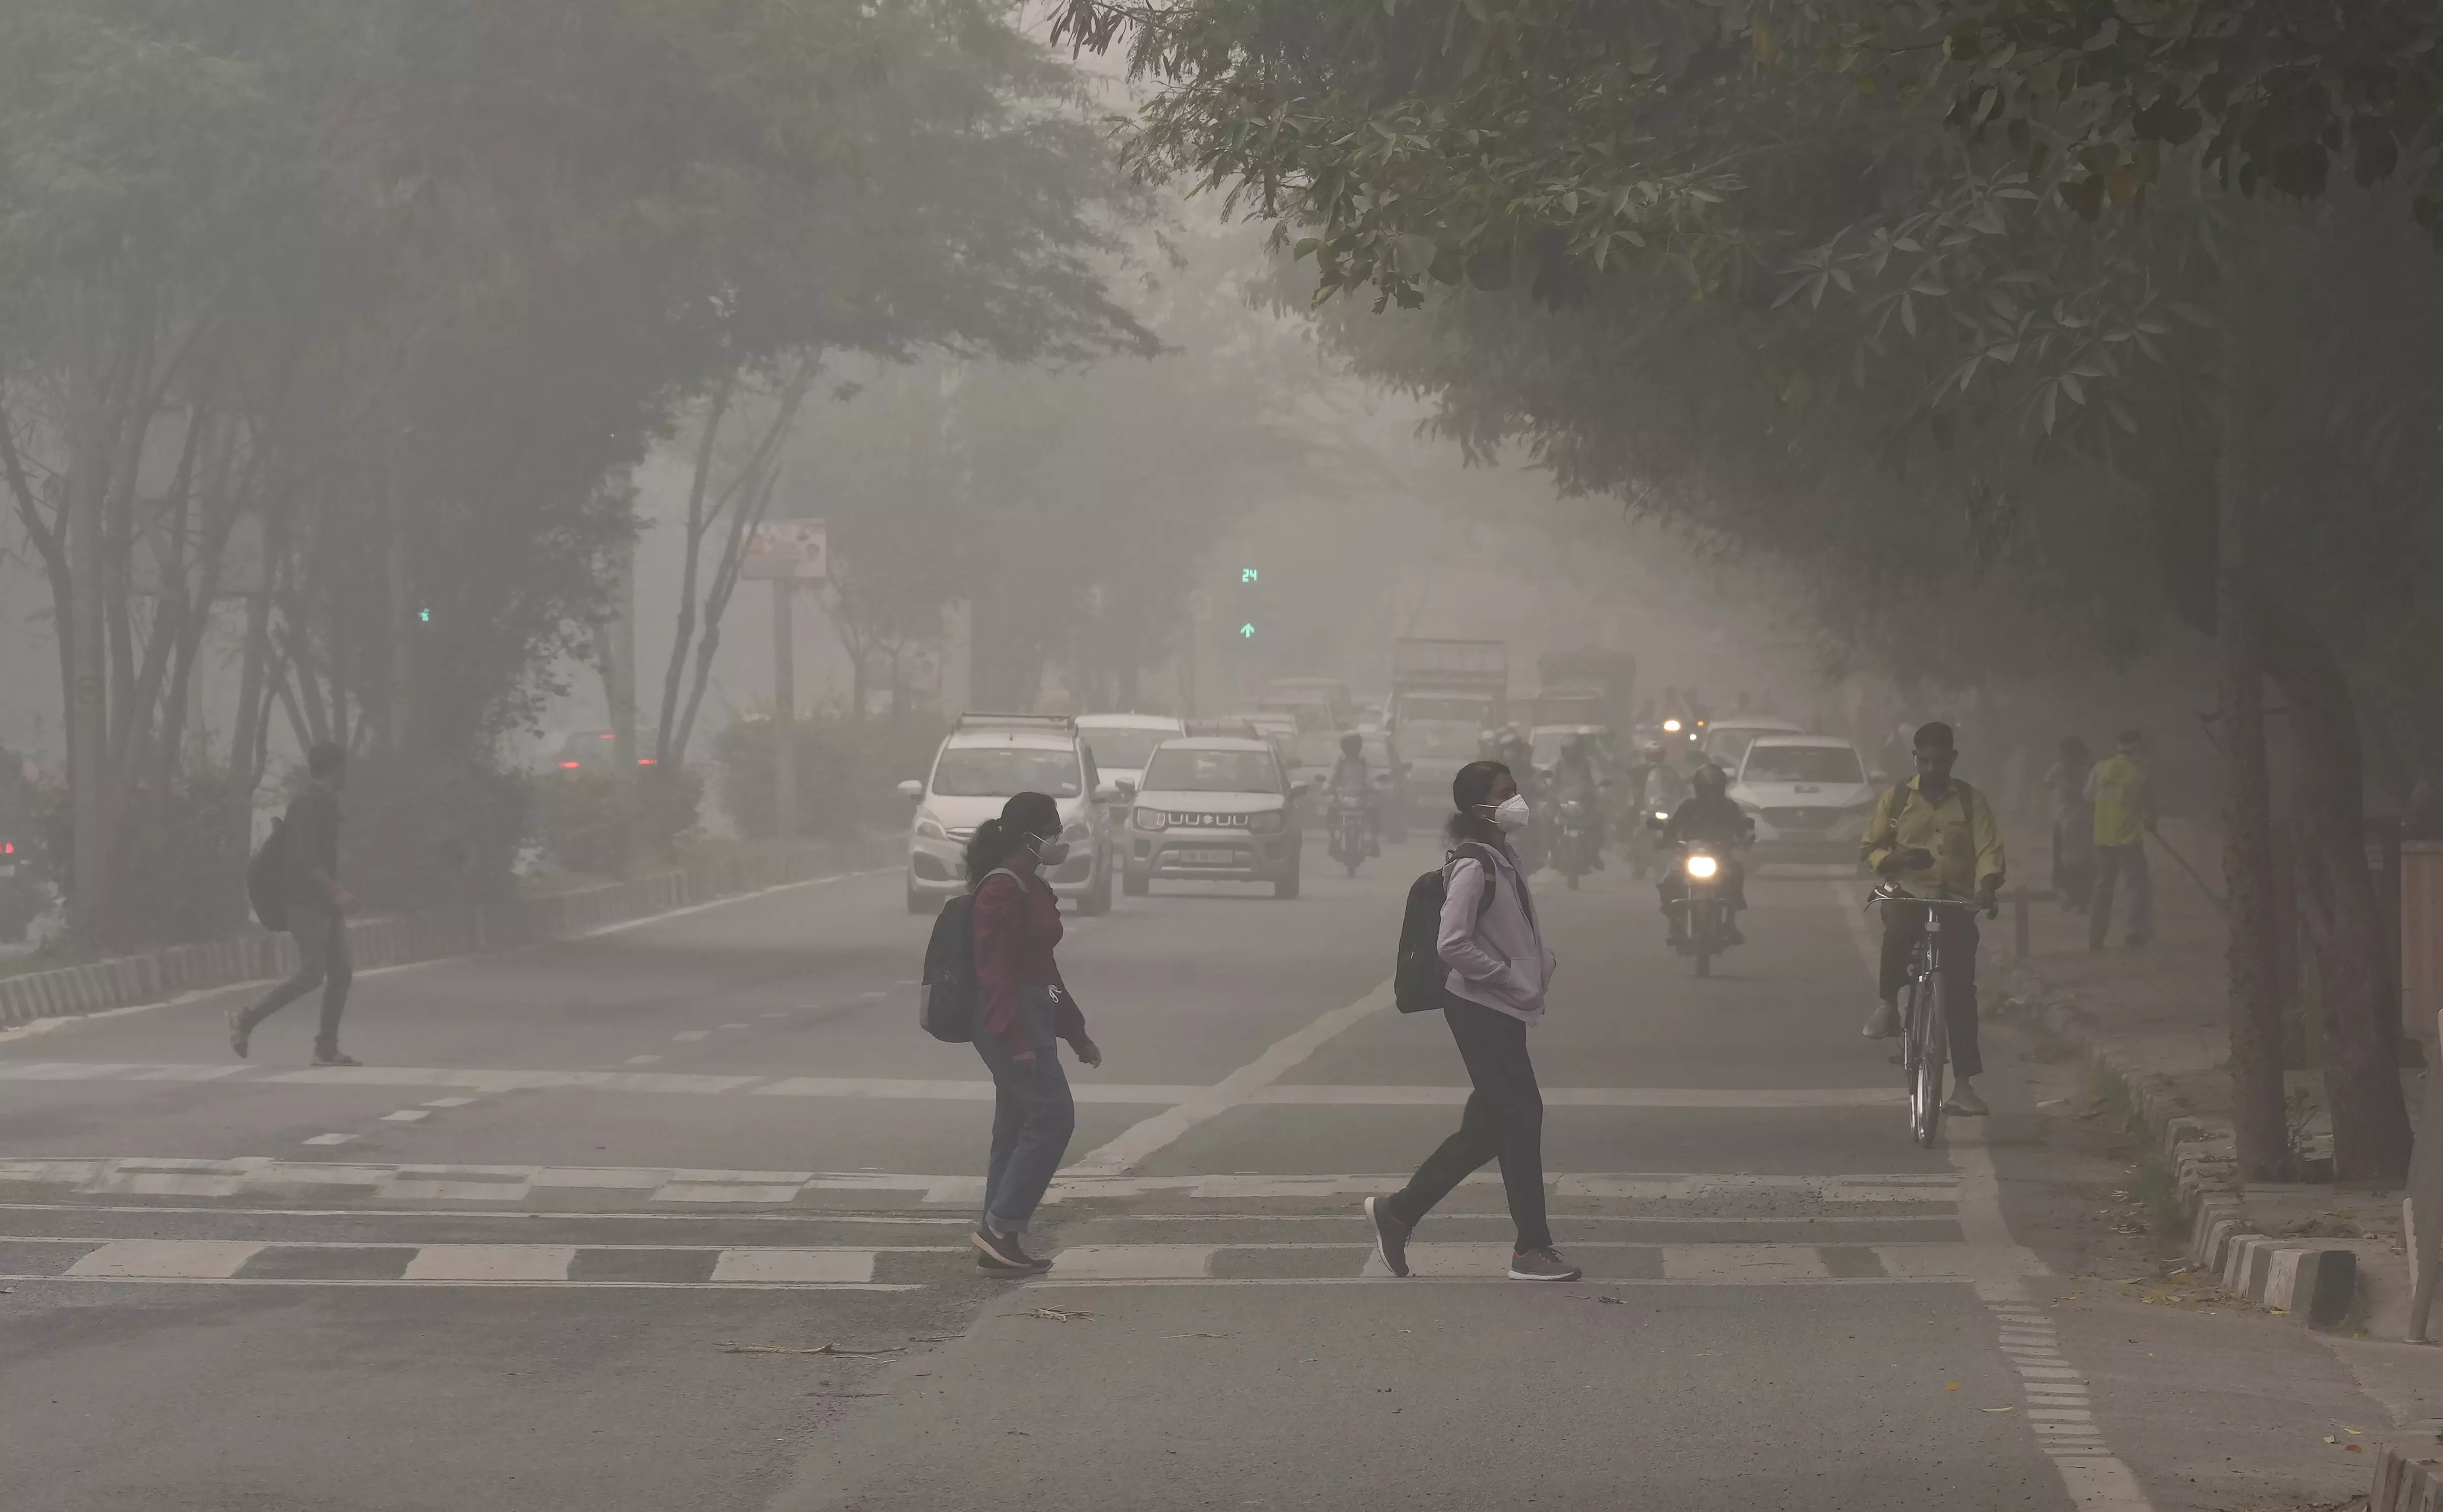 Delhi air pollution